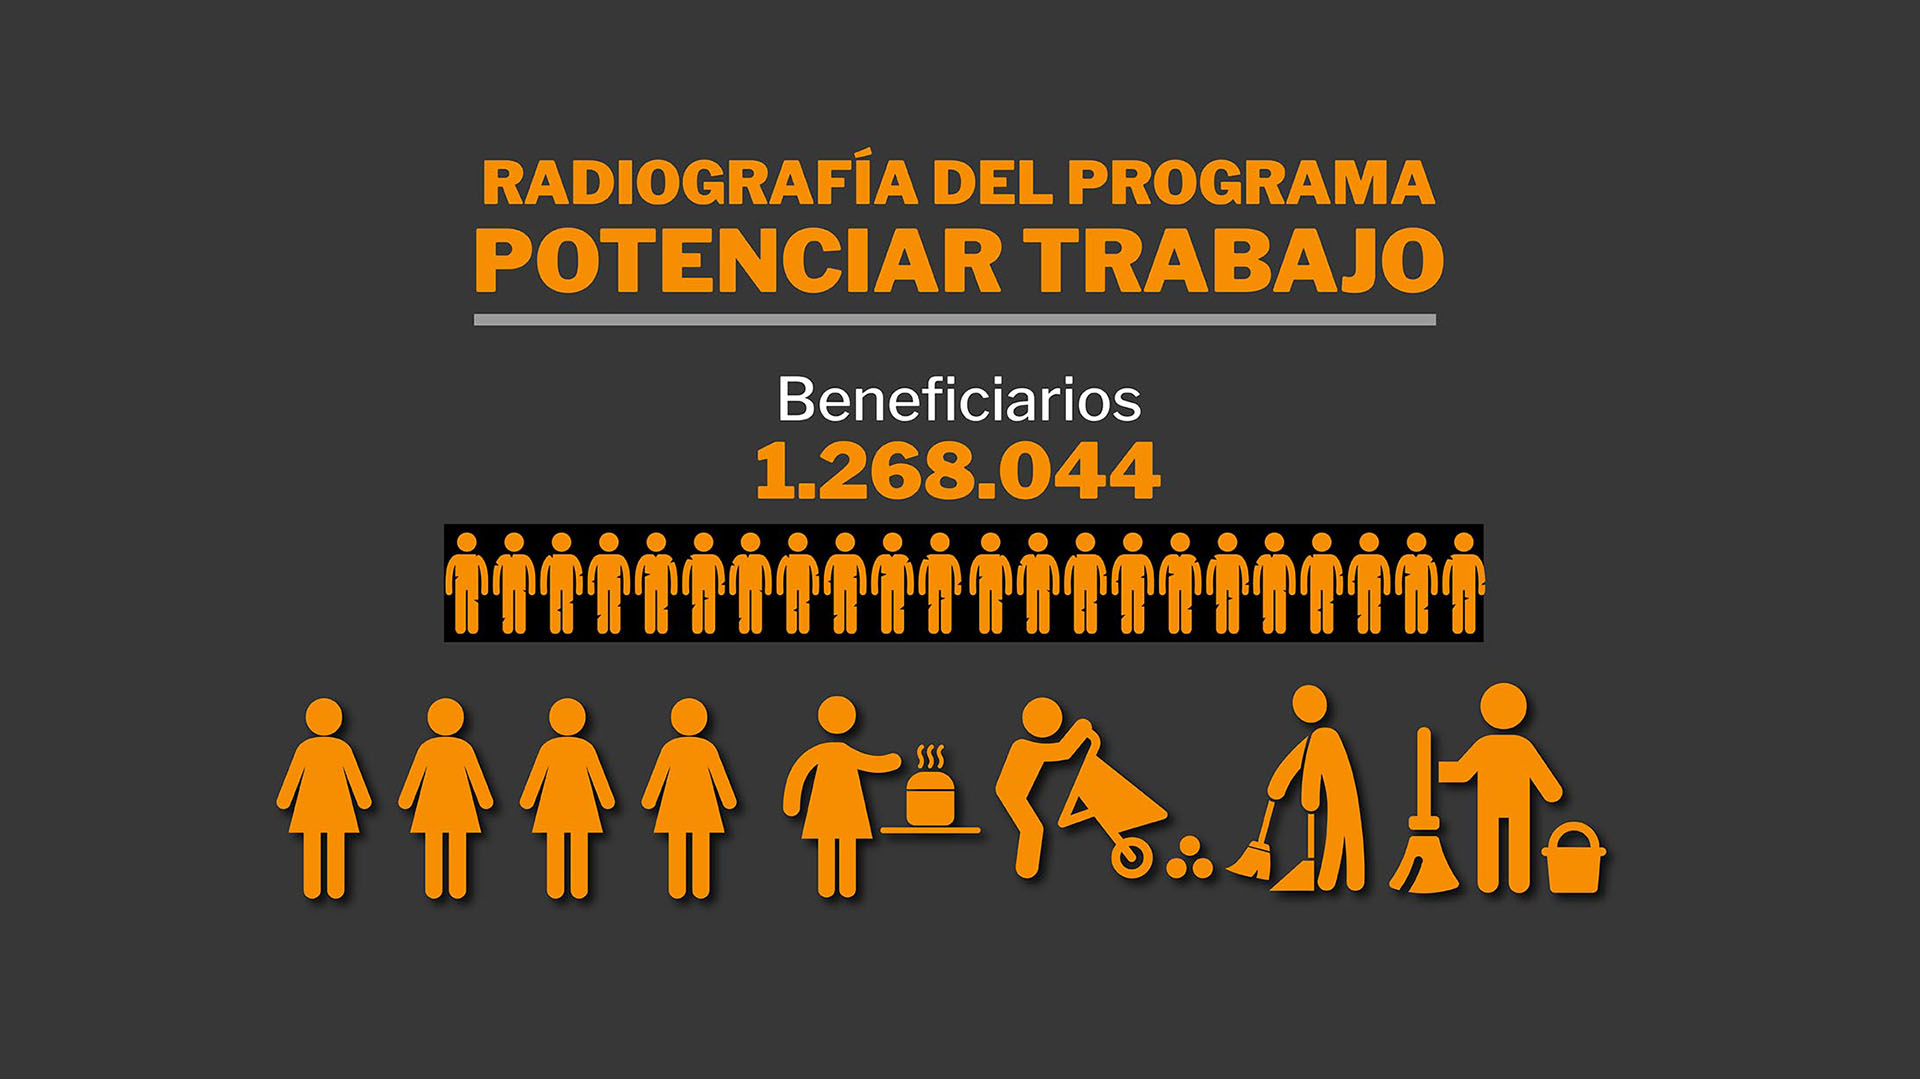 Radiografía del Potenciar Trabajo: la mayoría son mujeres, jóvenes, sin estudios y realizan tareas comunitarias